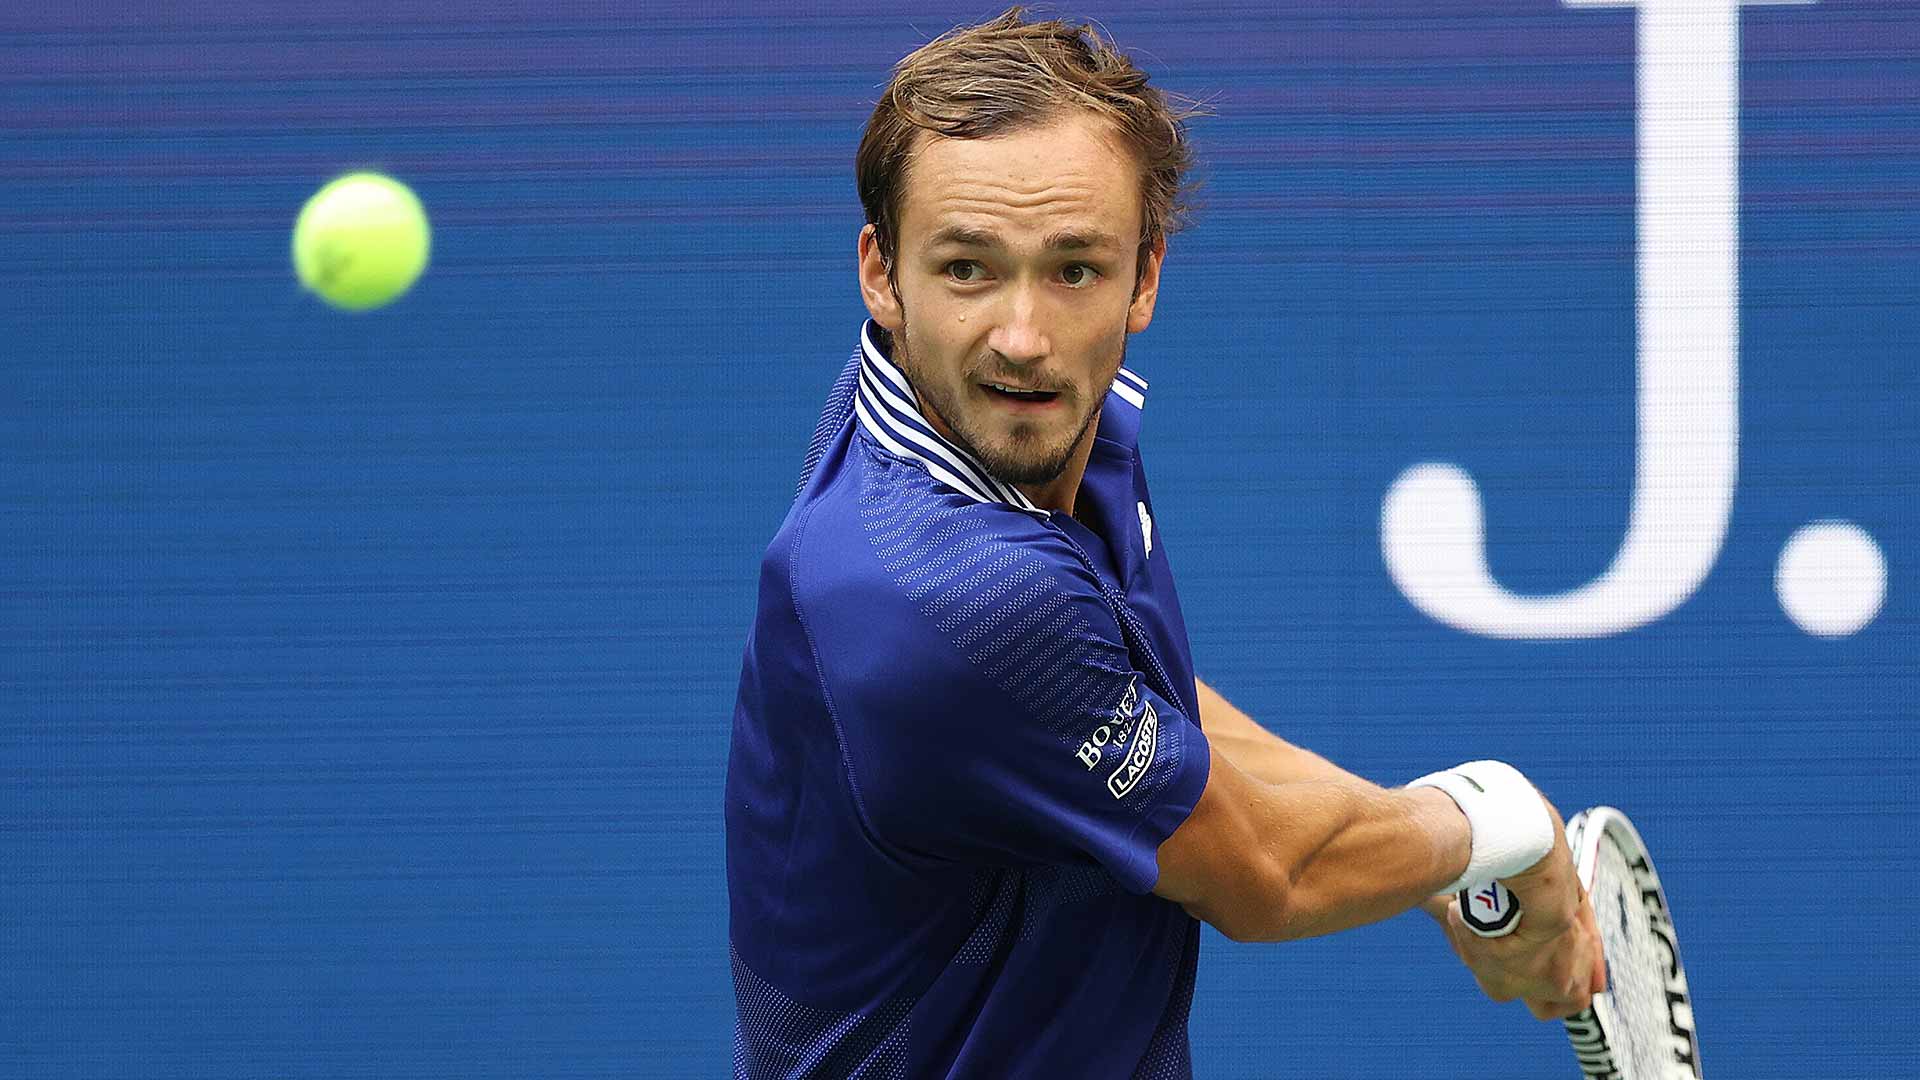 El Sueño Medvedev Contra La Ambición De Djokovic | ATP Tour | Tenis